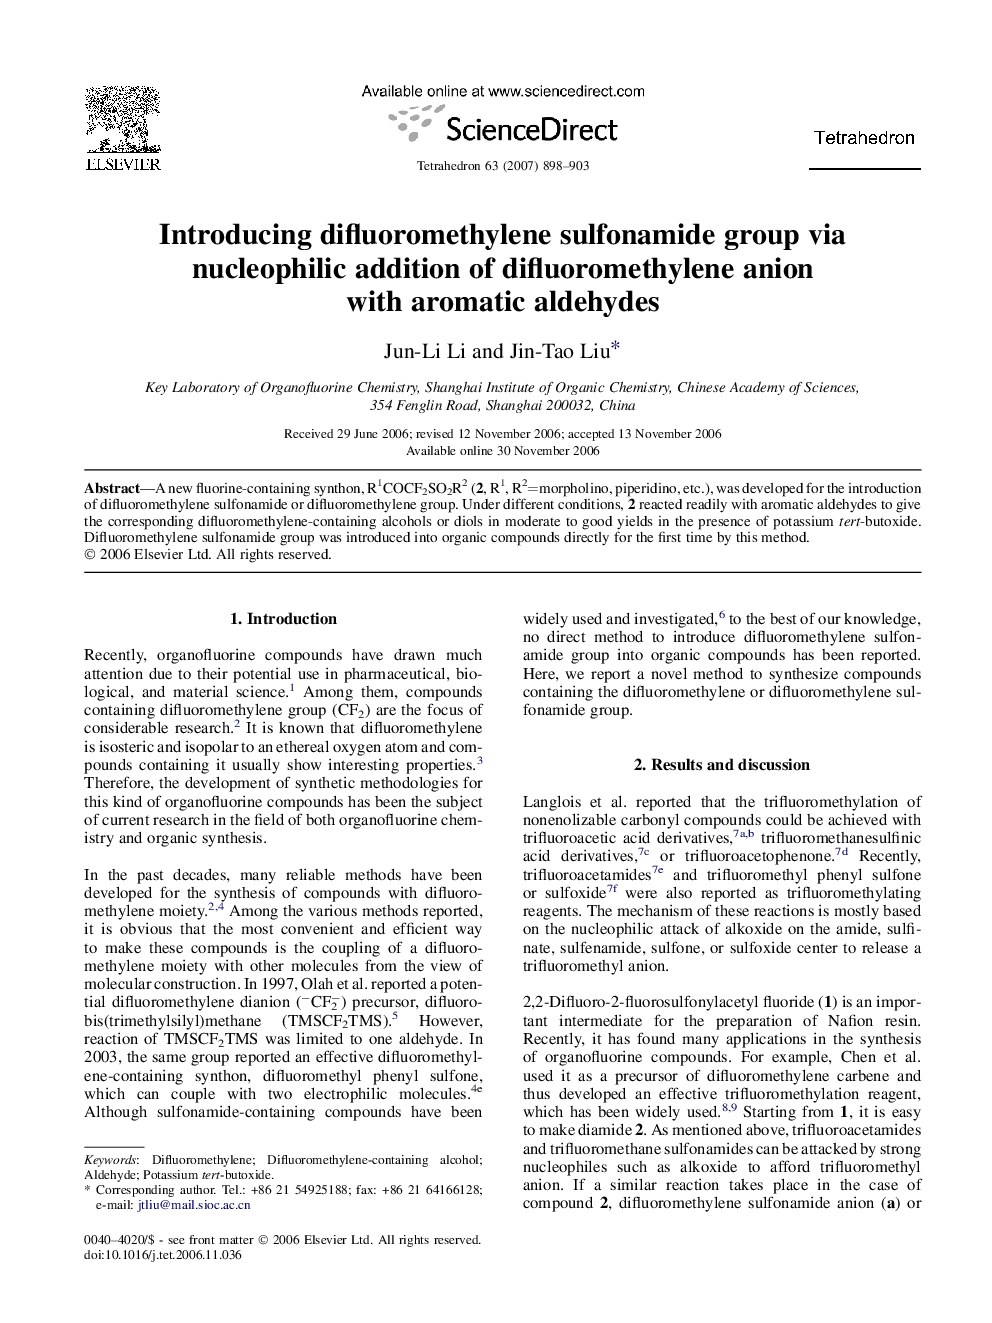 Introducing difluoromethylene sulfonamide group via nucleophilic addition of difluoromethylene anion with aromatic aldehydes